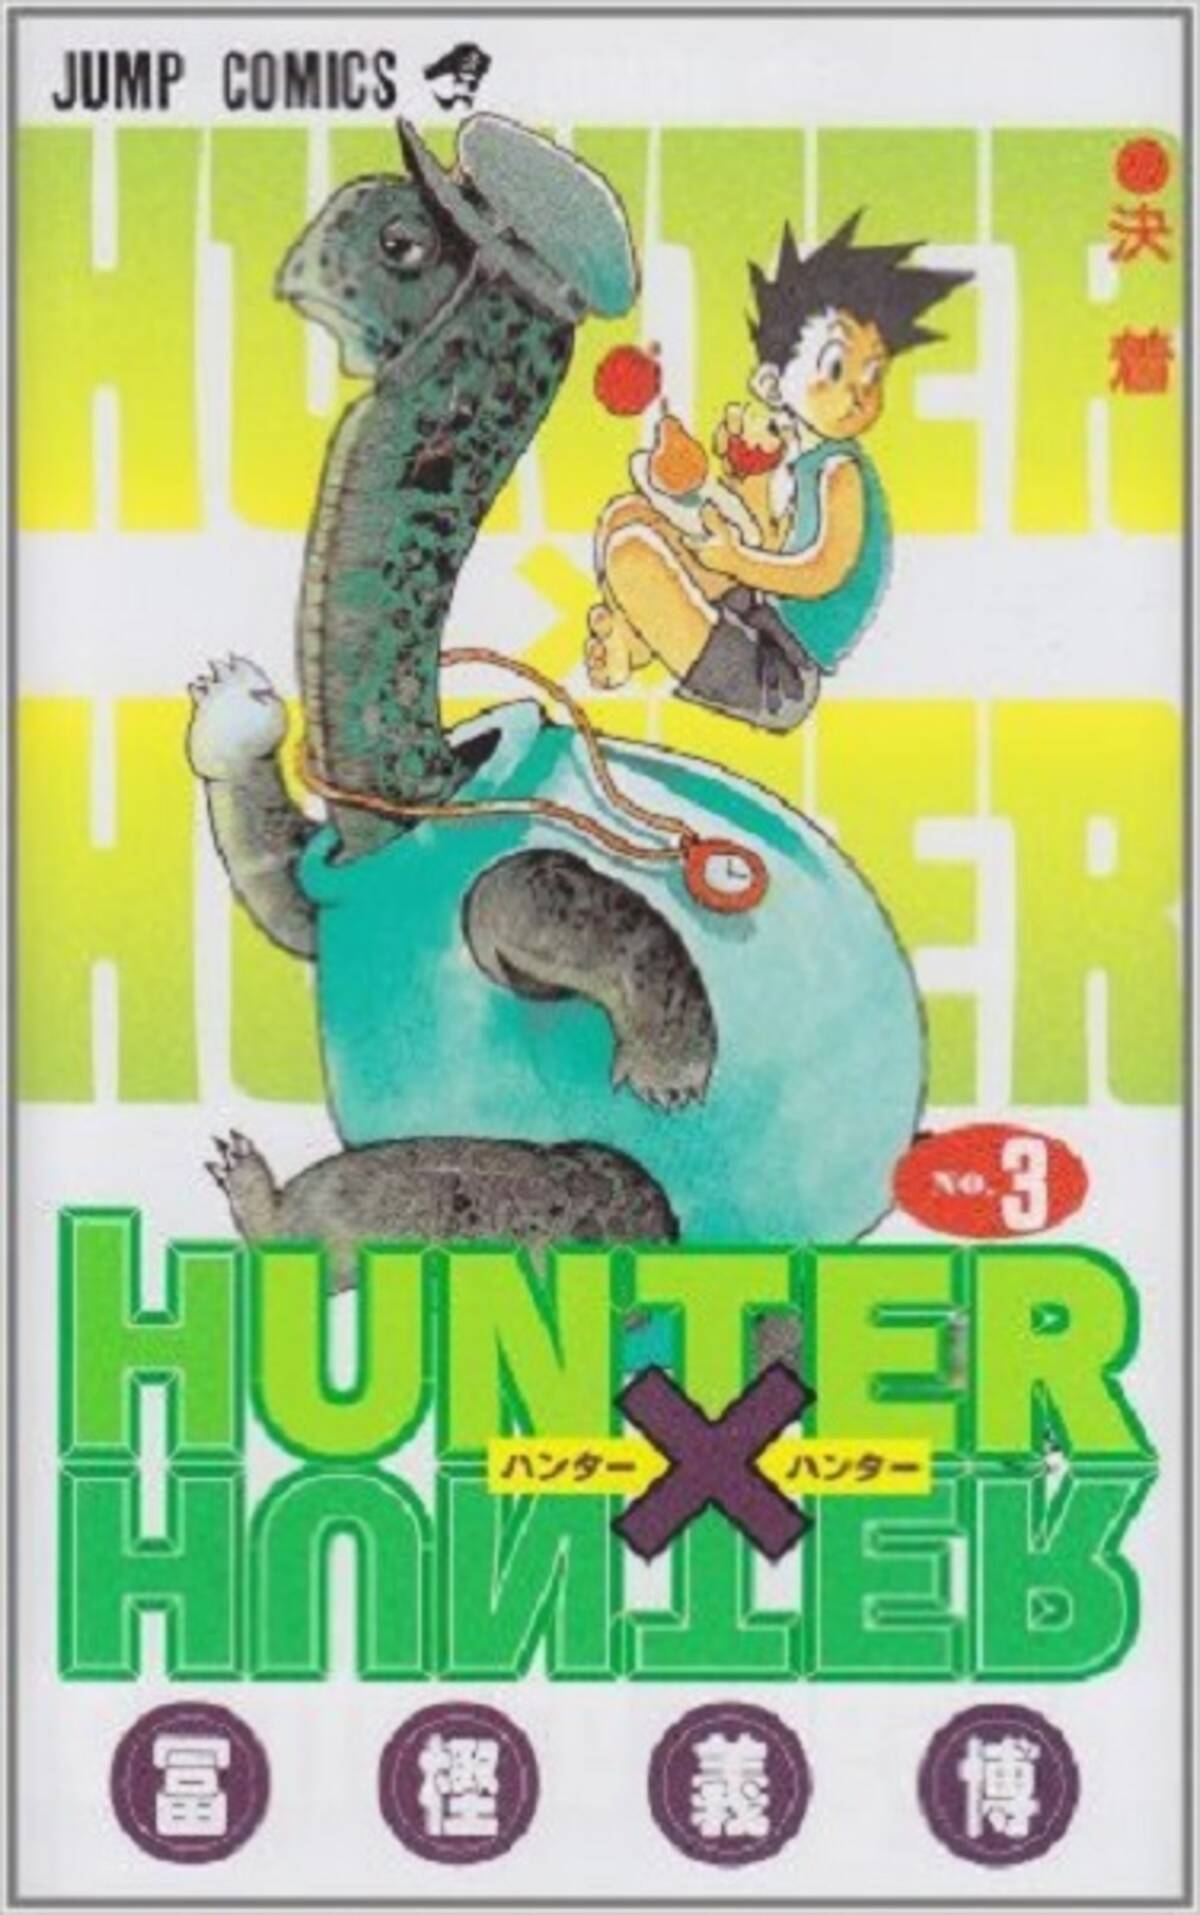 嘘の設定を誤ったマジタニの誤算 Hunter Hunter 3巻を振り返る エキサイトニュース